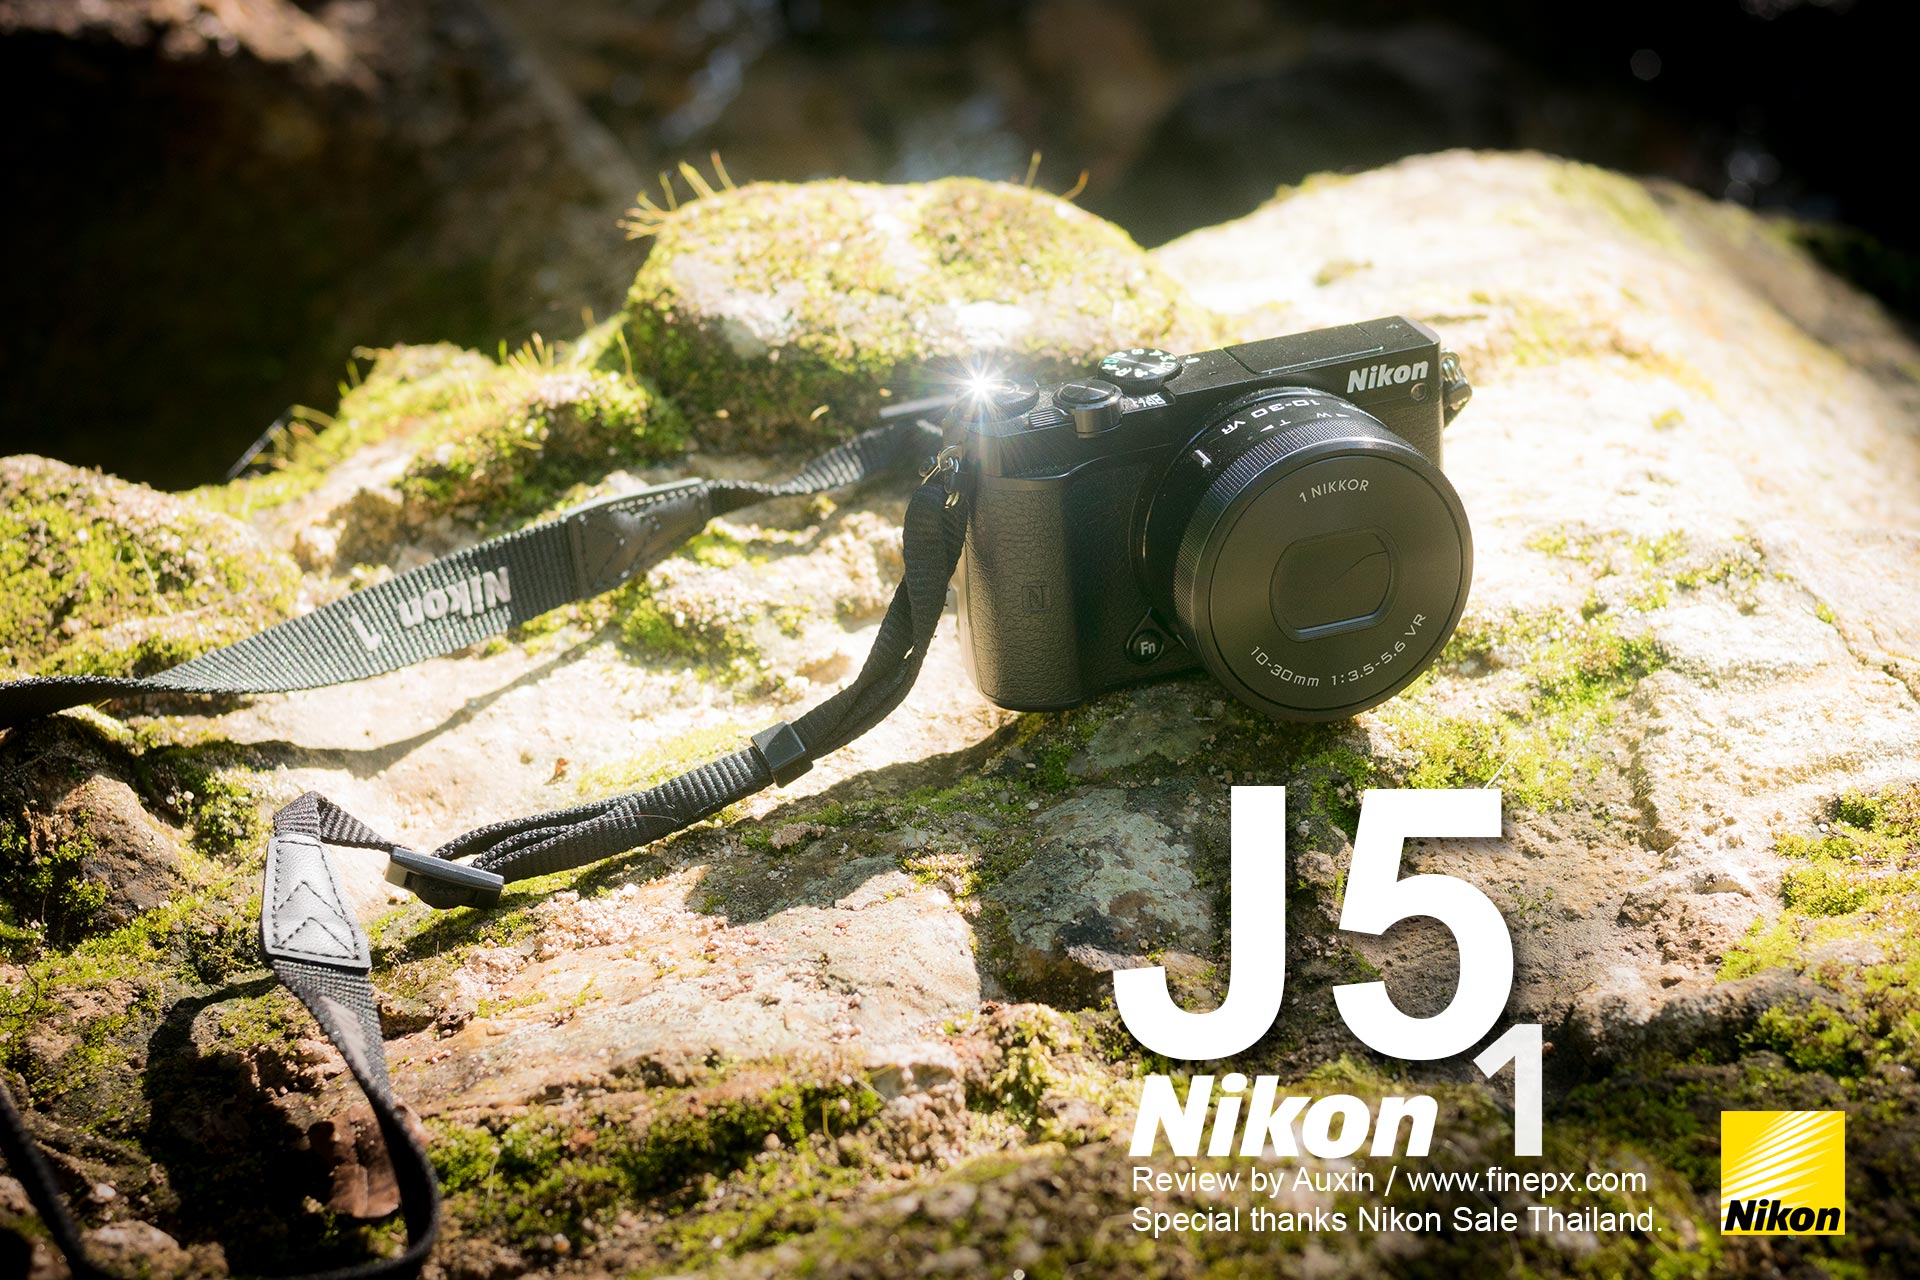 Review Nikon1 J5 by Auxin - Pantip